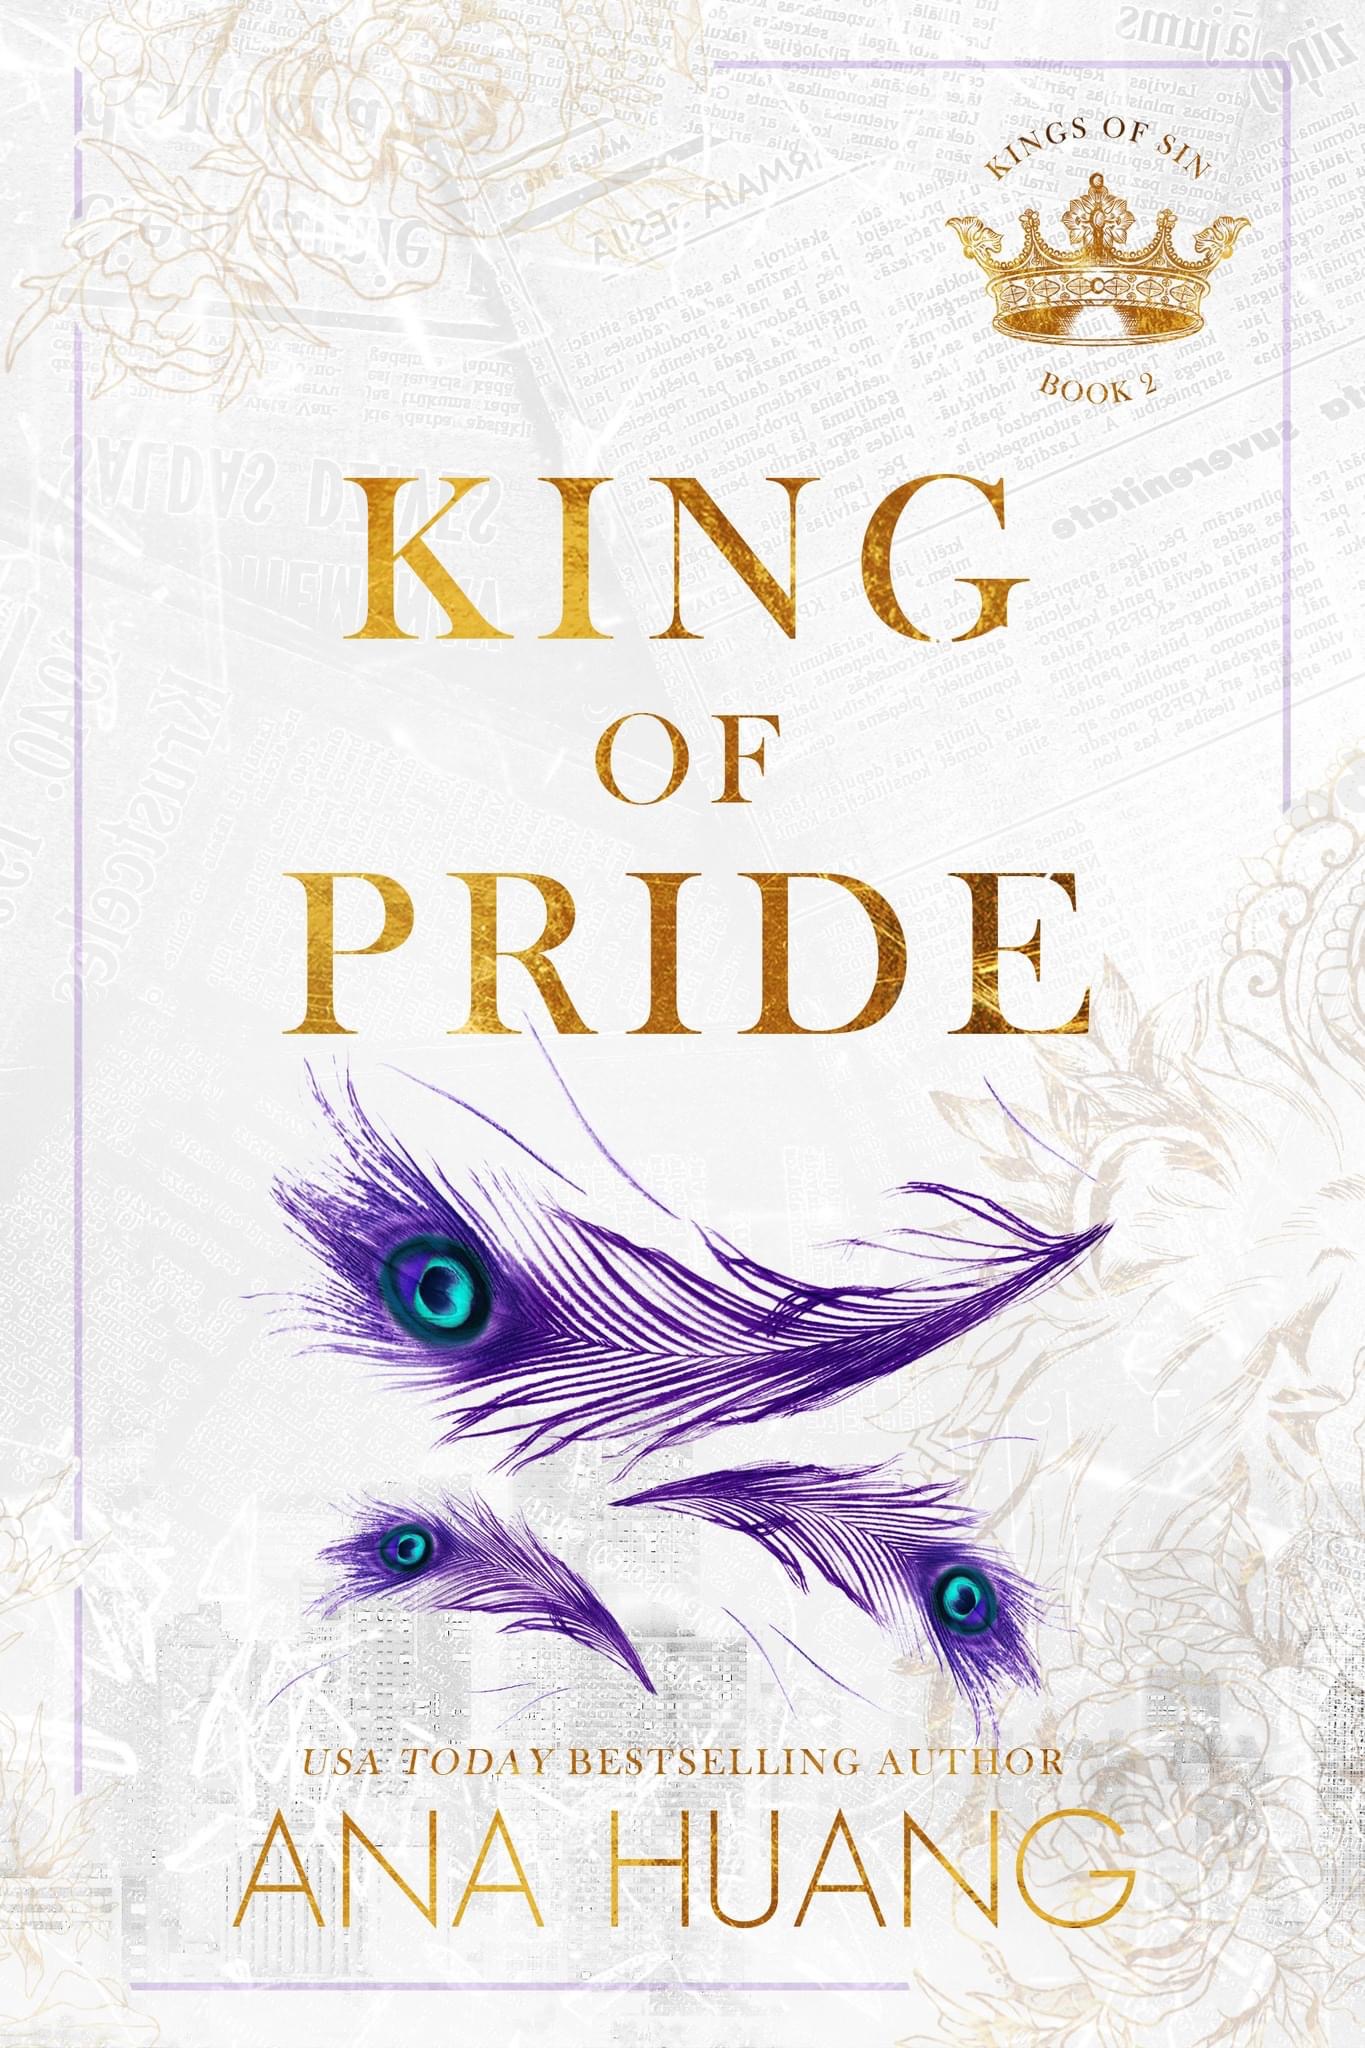 King of Pride (Kings of Sin) by Ana Huang